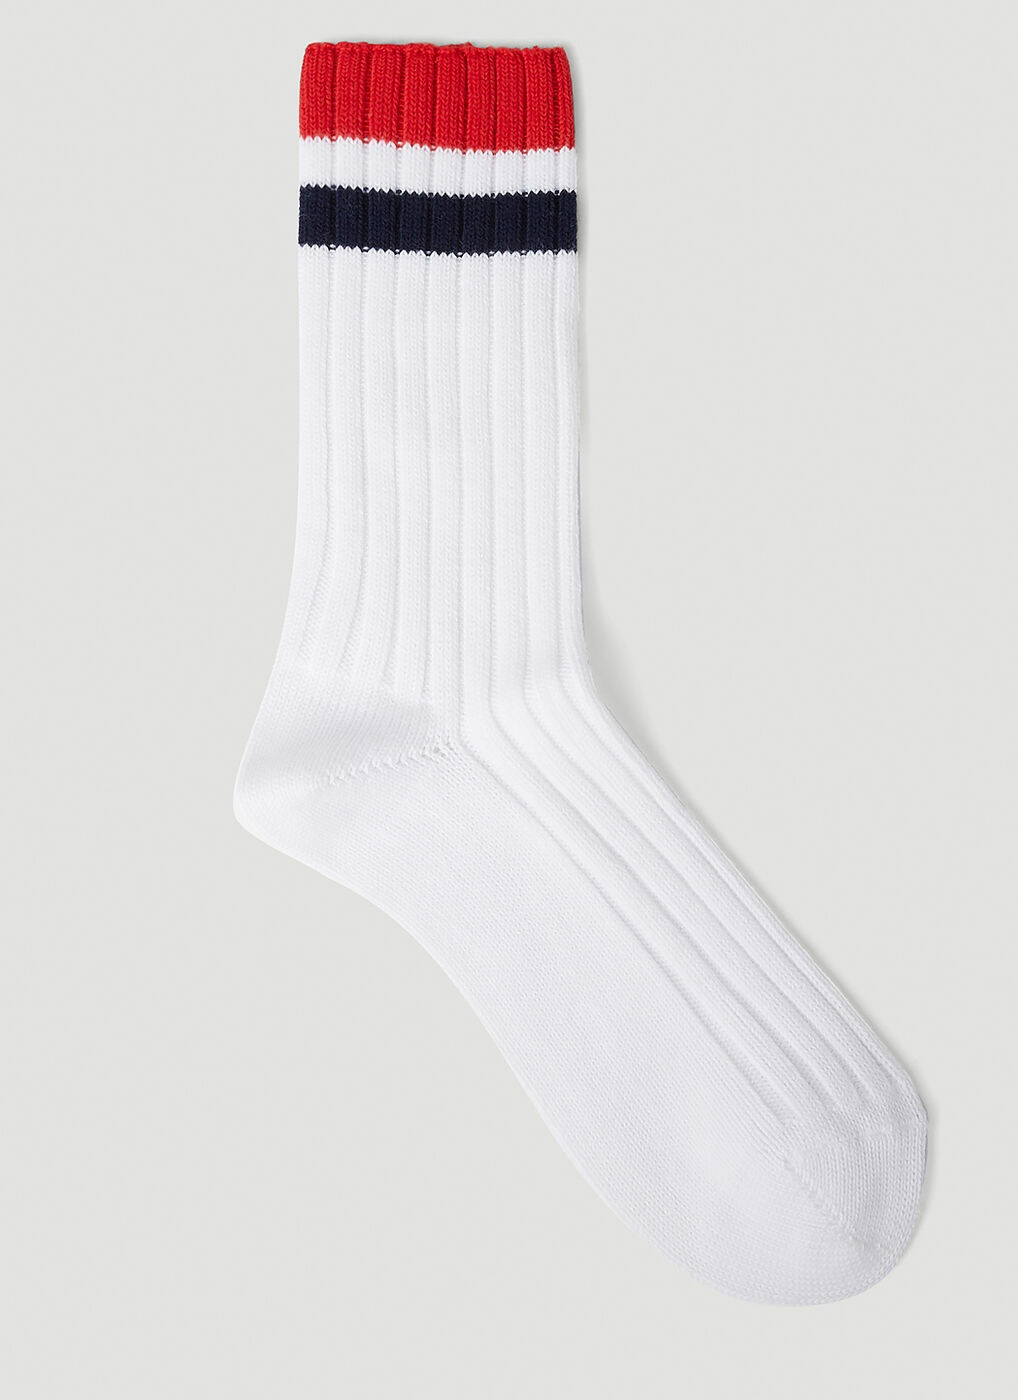 Gucci - Logo Socks in White Gucci